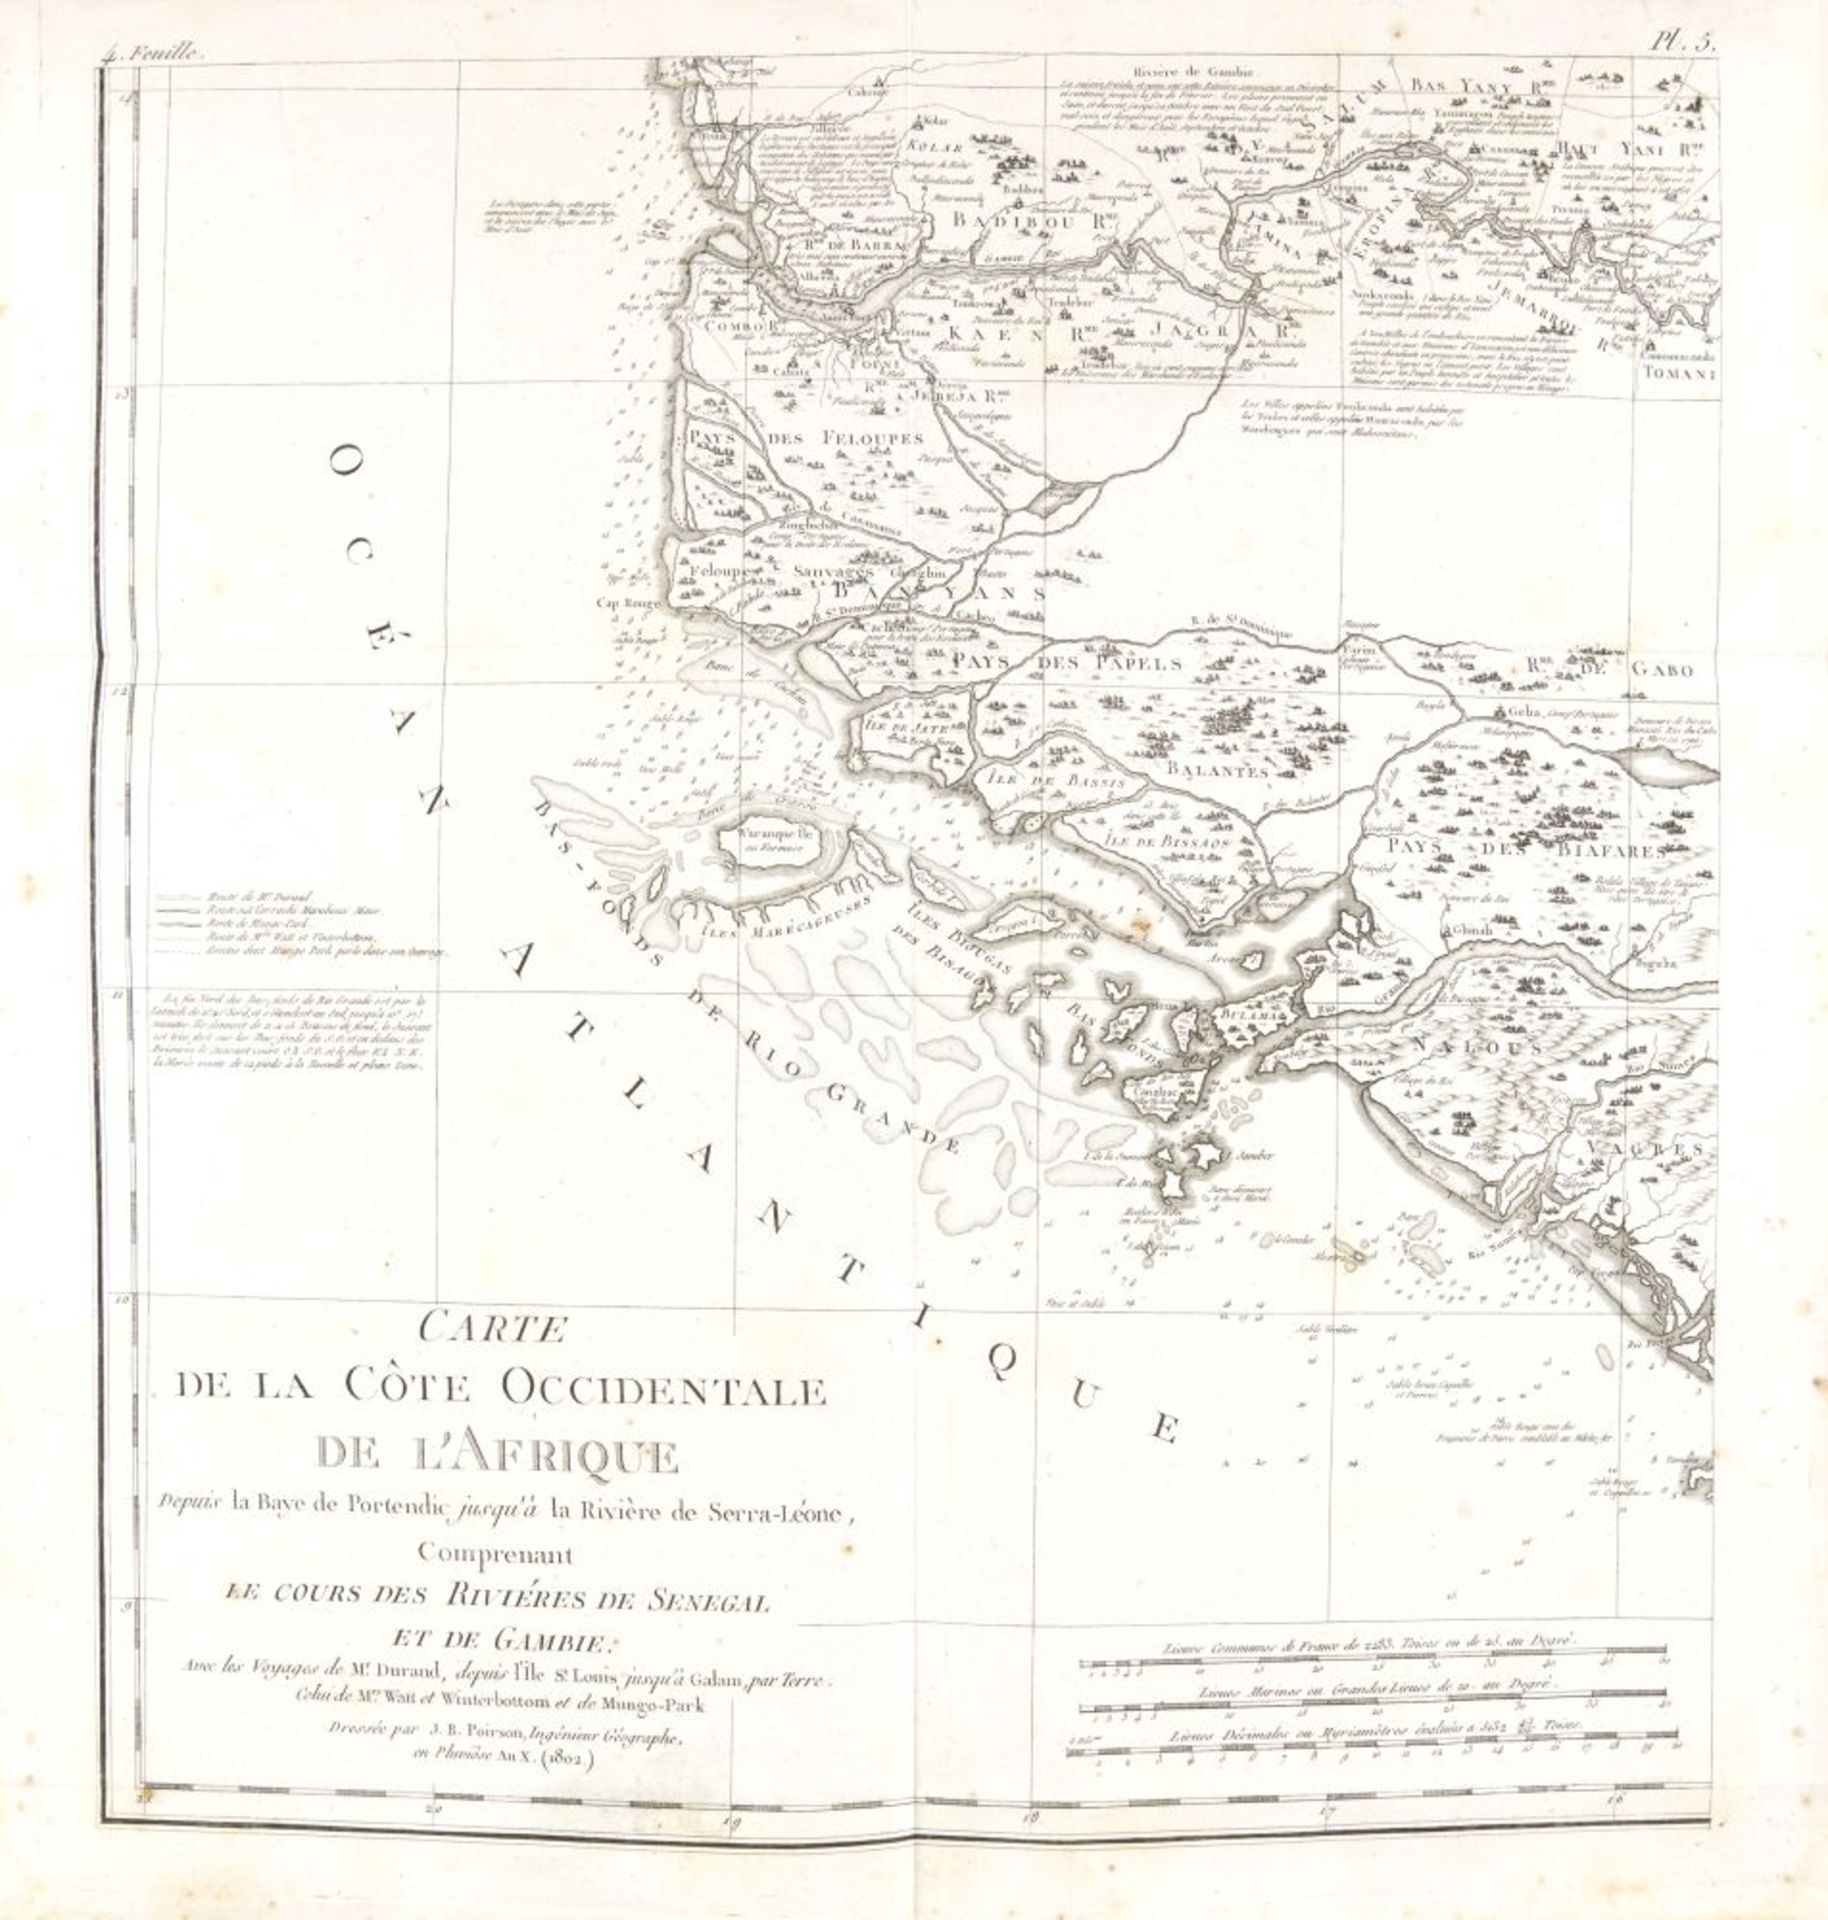 J. B. L. Durand, Atlas pour servir au voyage du Sénégal. Paris 1807.